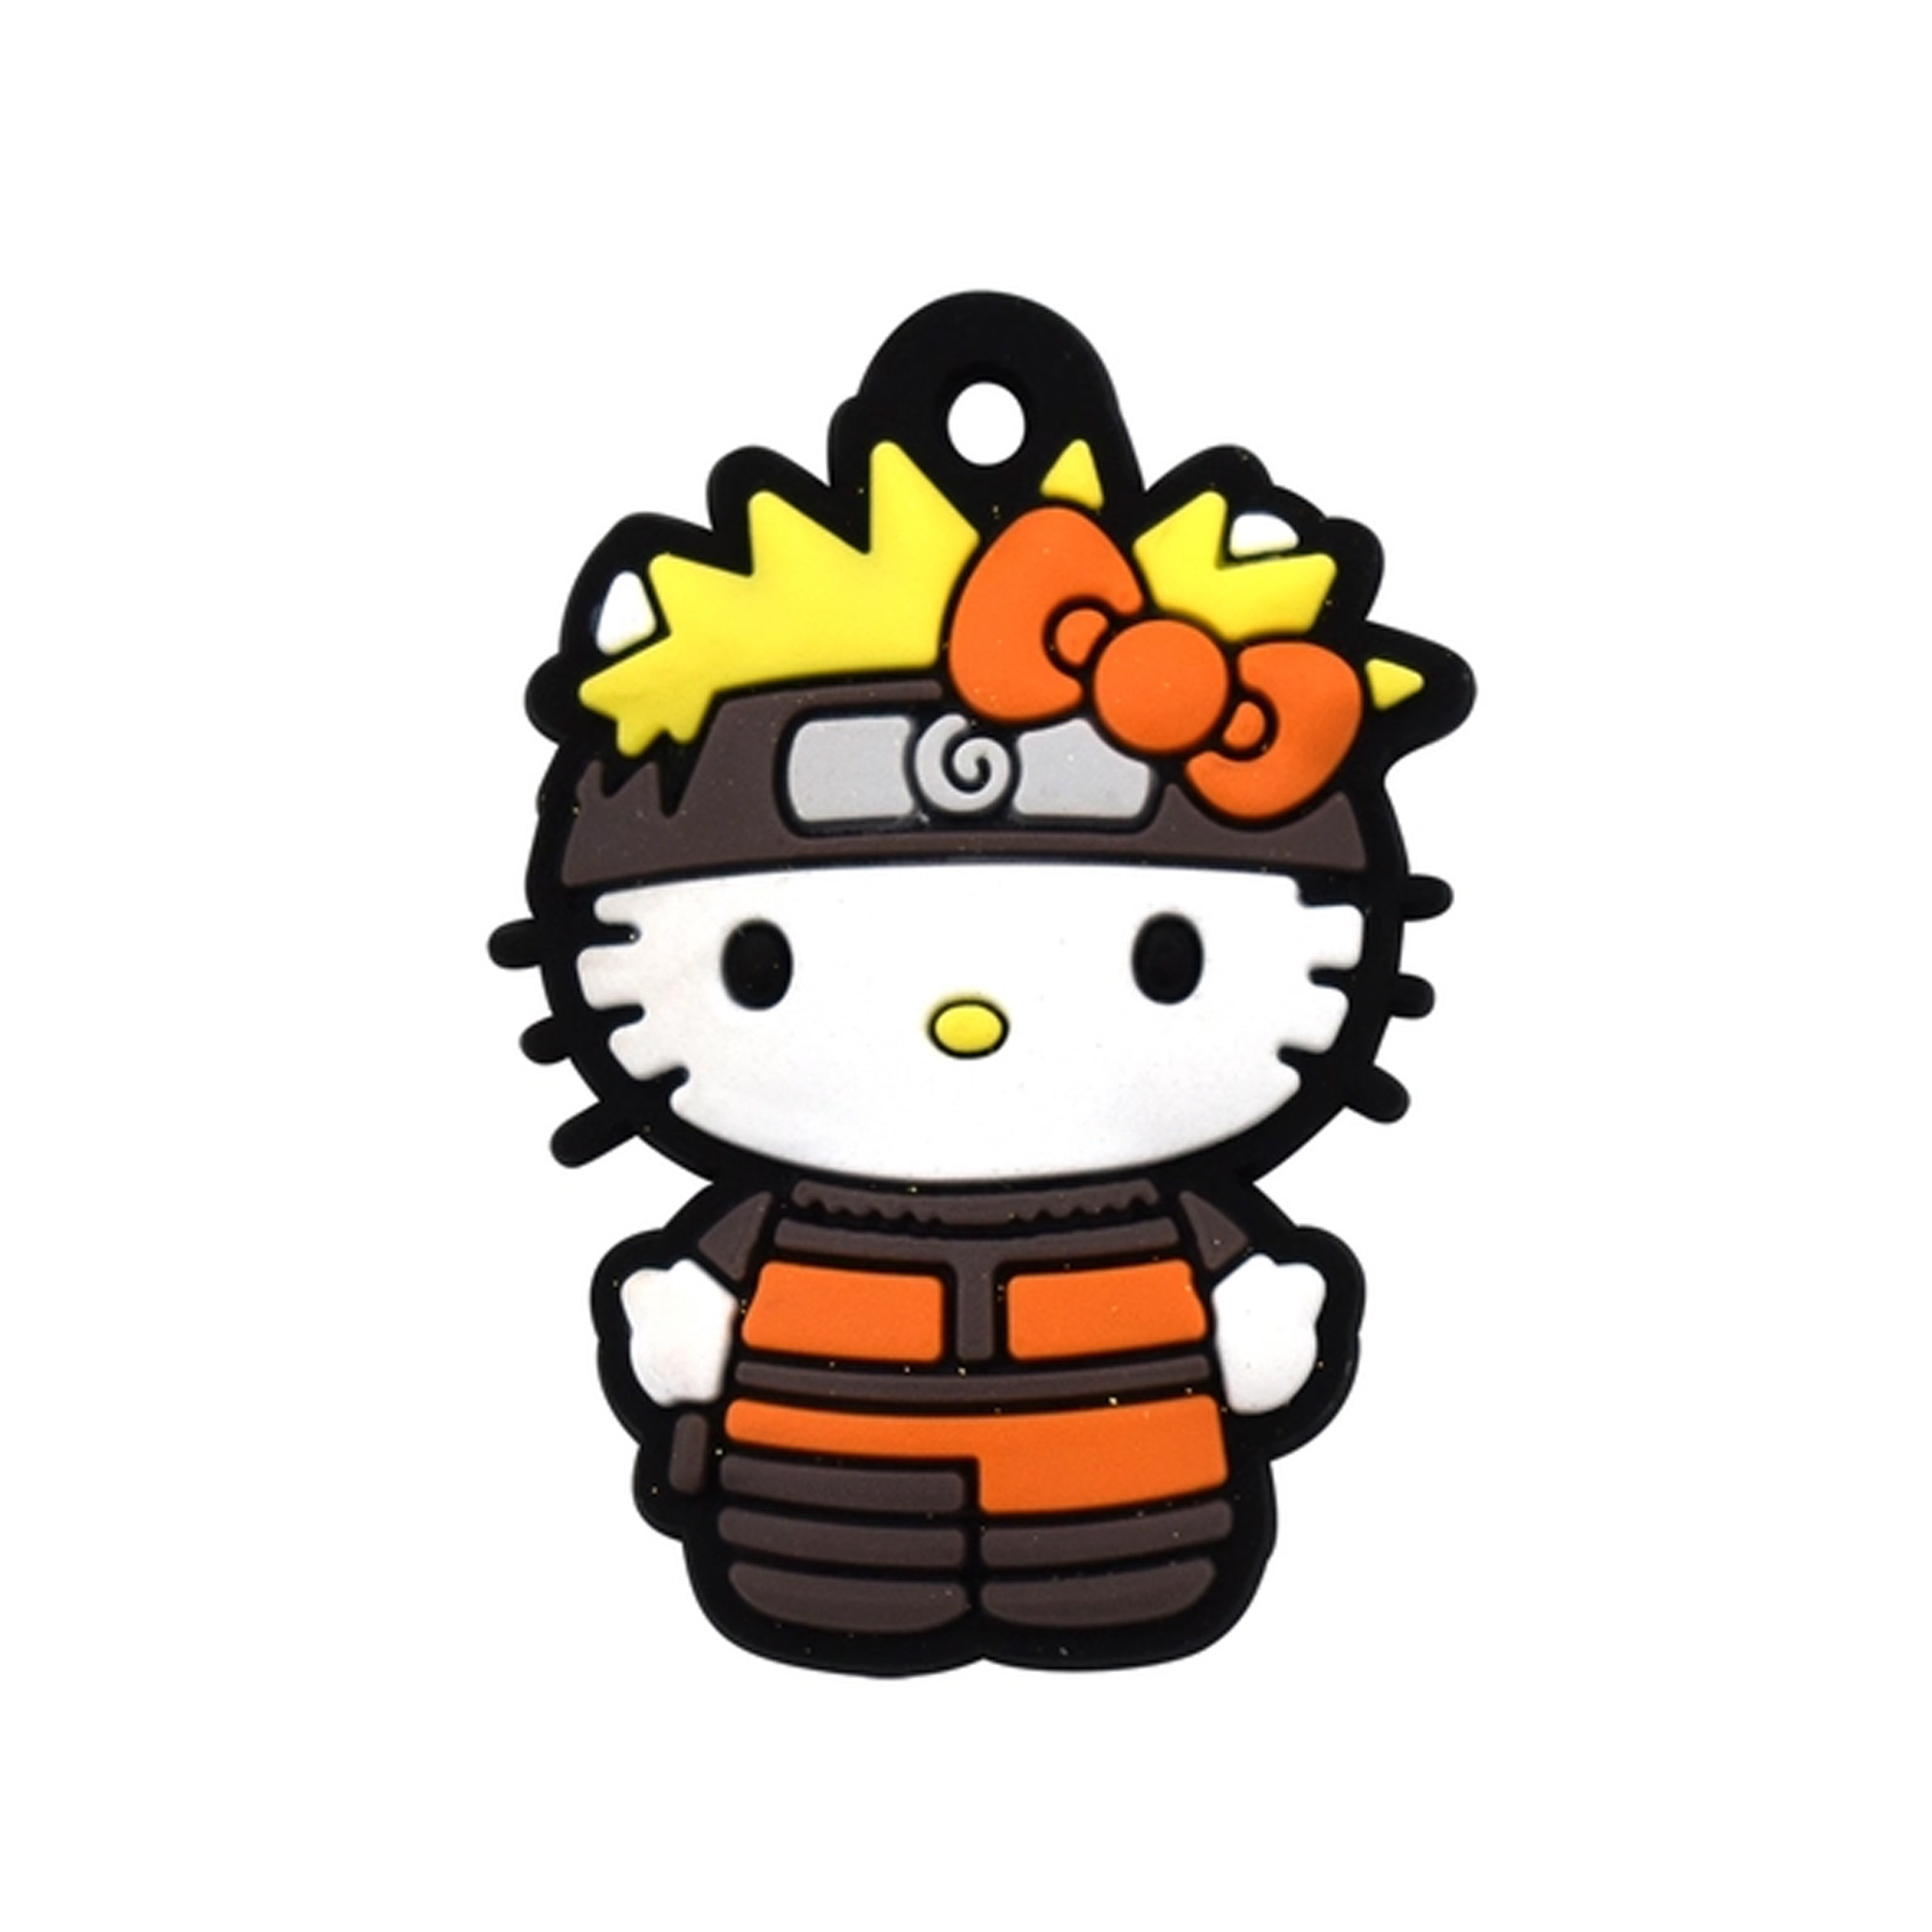 Naruto x Hello Kitty - Badebombe mit Überraschung im Inneren